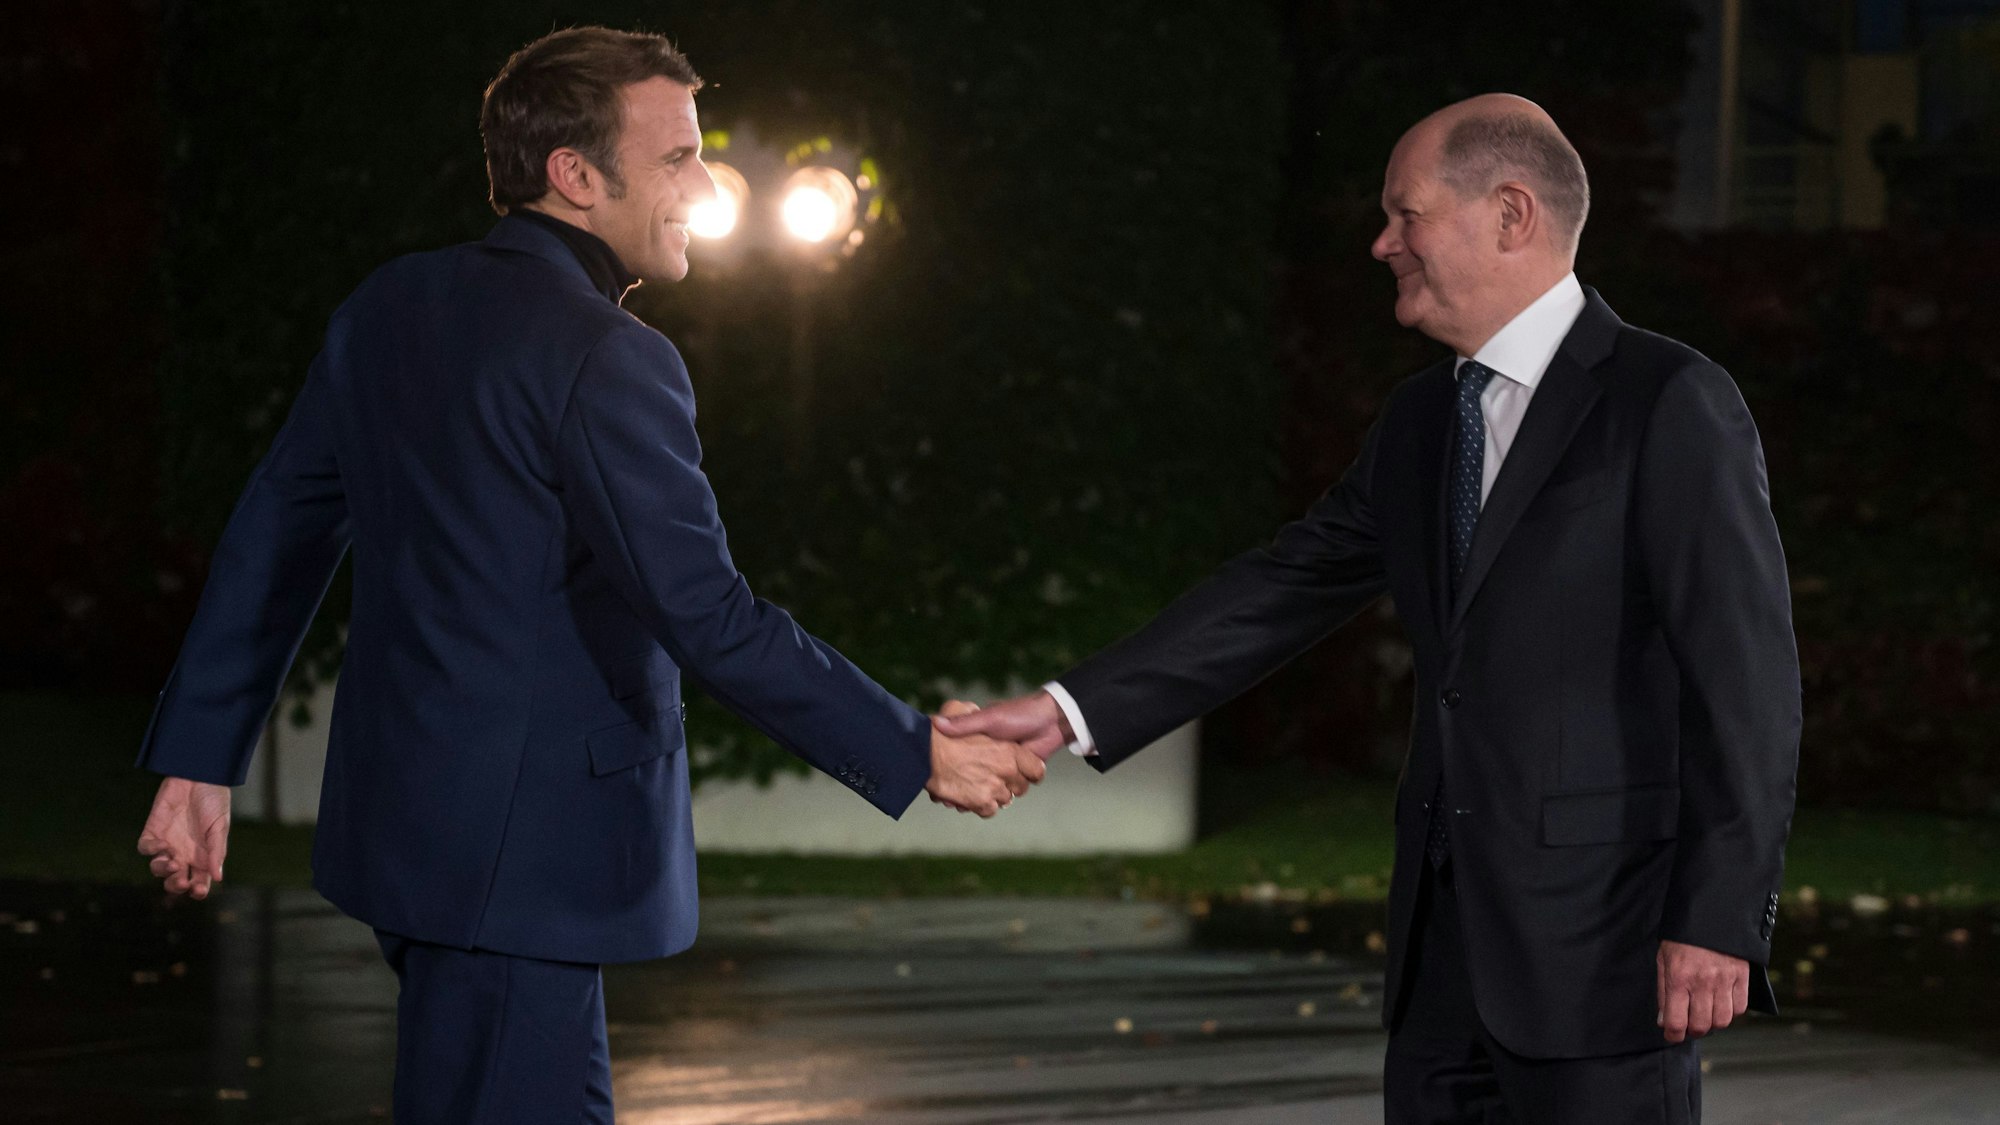 Bundeskanzler Olaf Scholz (SPD, r) empfängt Emmanuel Macron, Präsident von Frankreich, zum Tag der Deutschen Einheit zu einem Abendessen im Bundeskanzleramt.